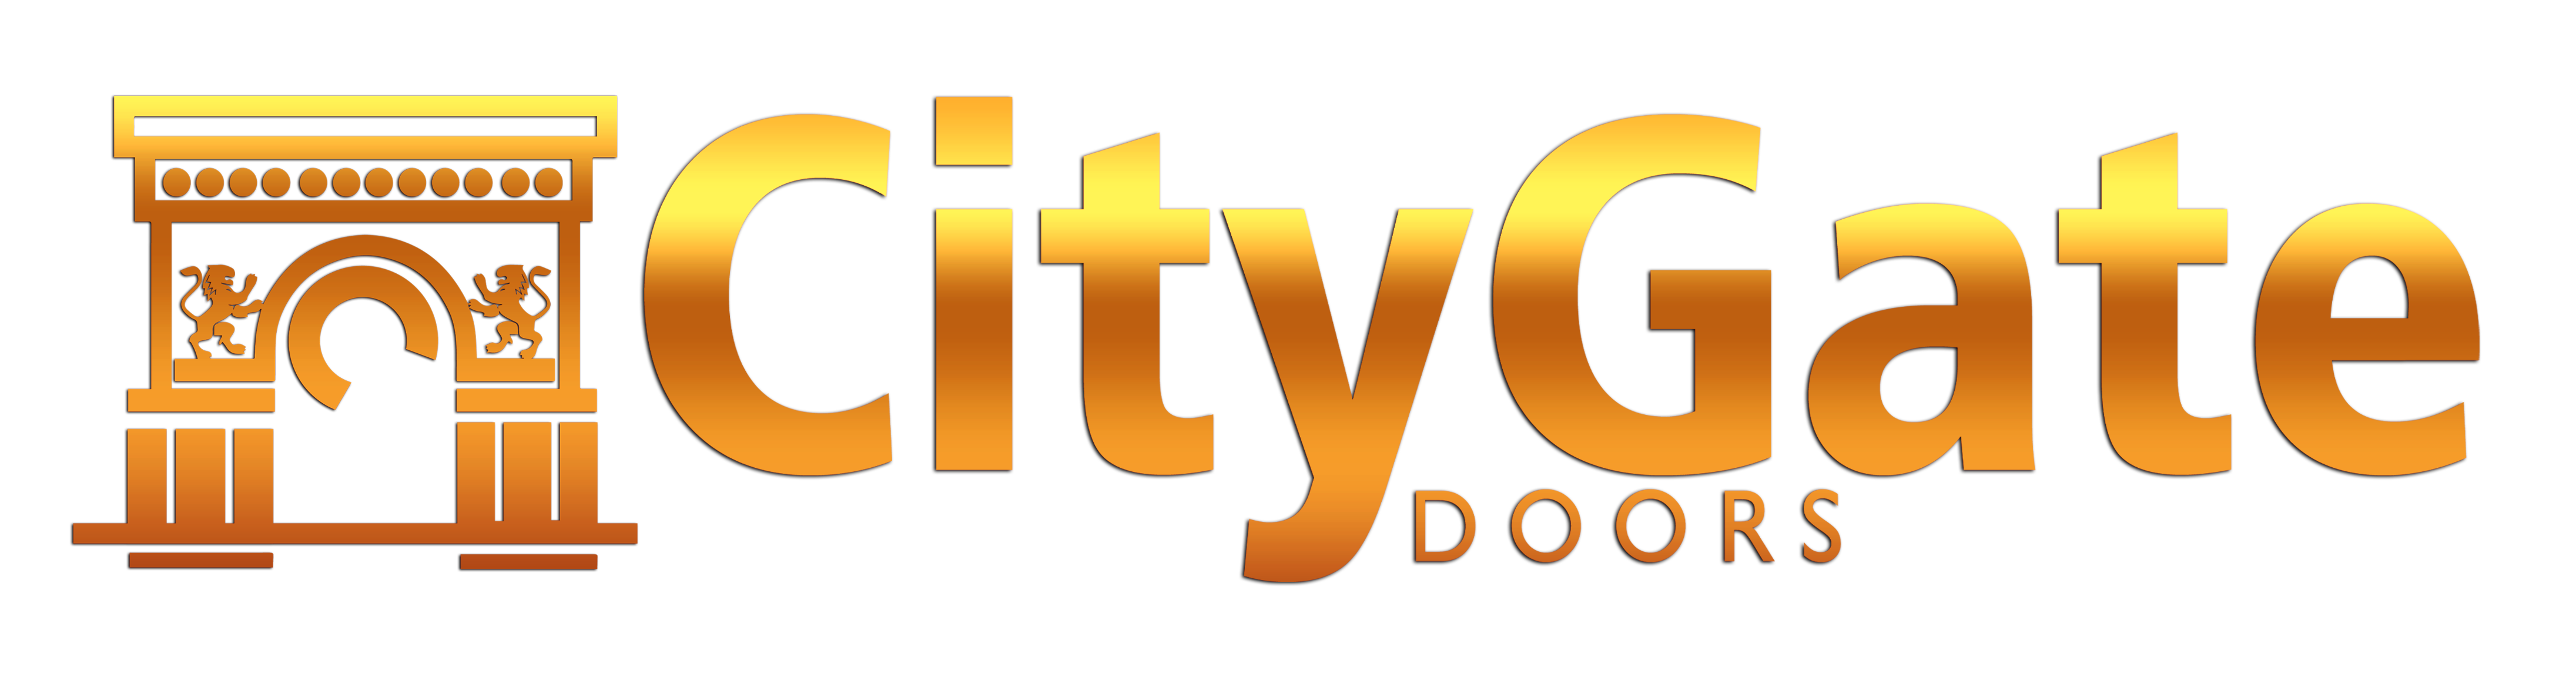 citygatedoors log